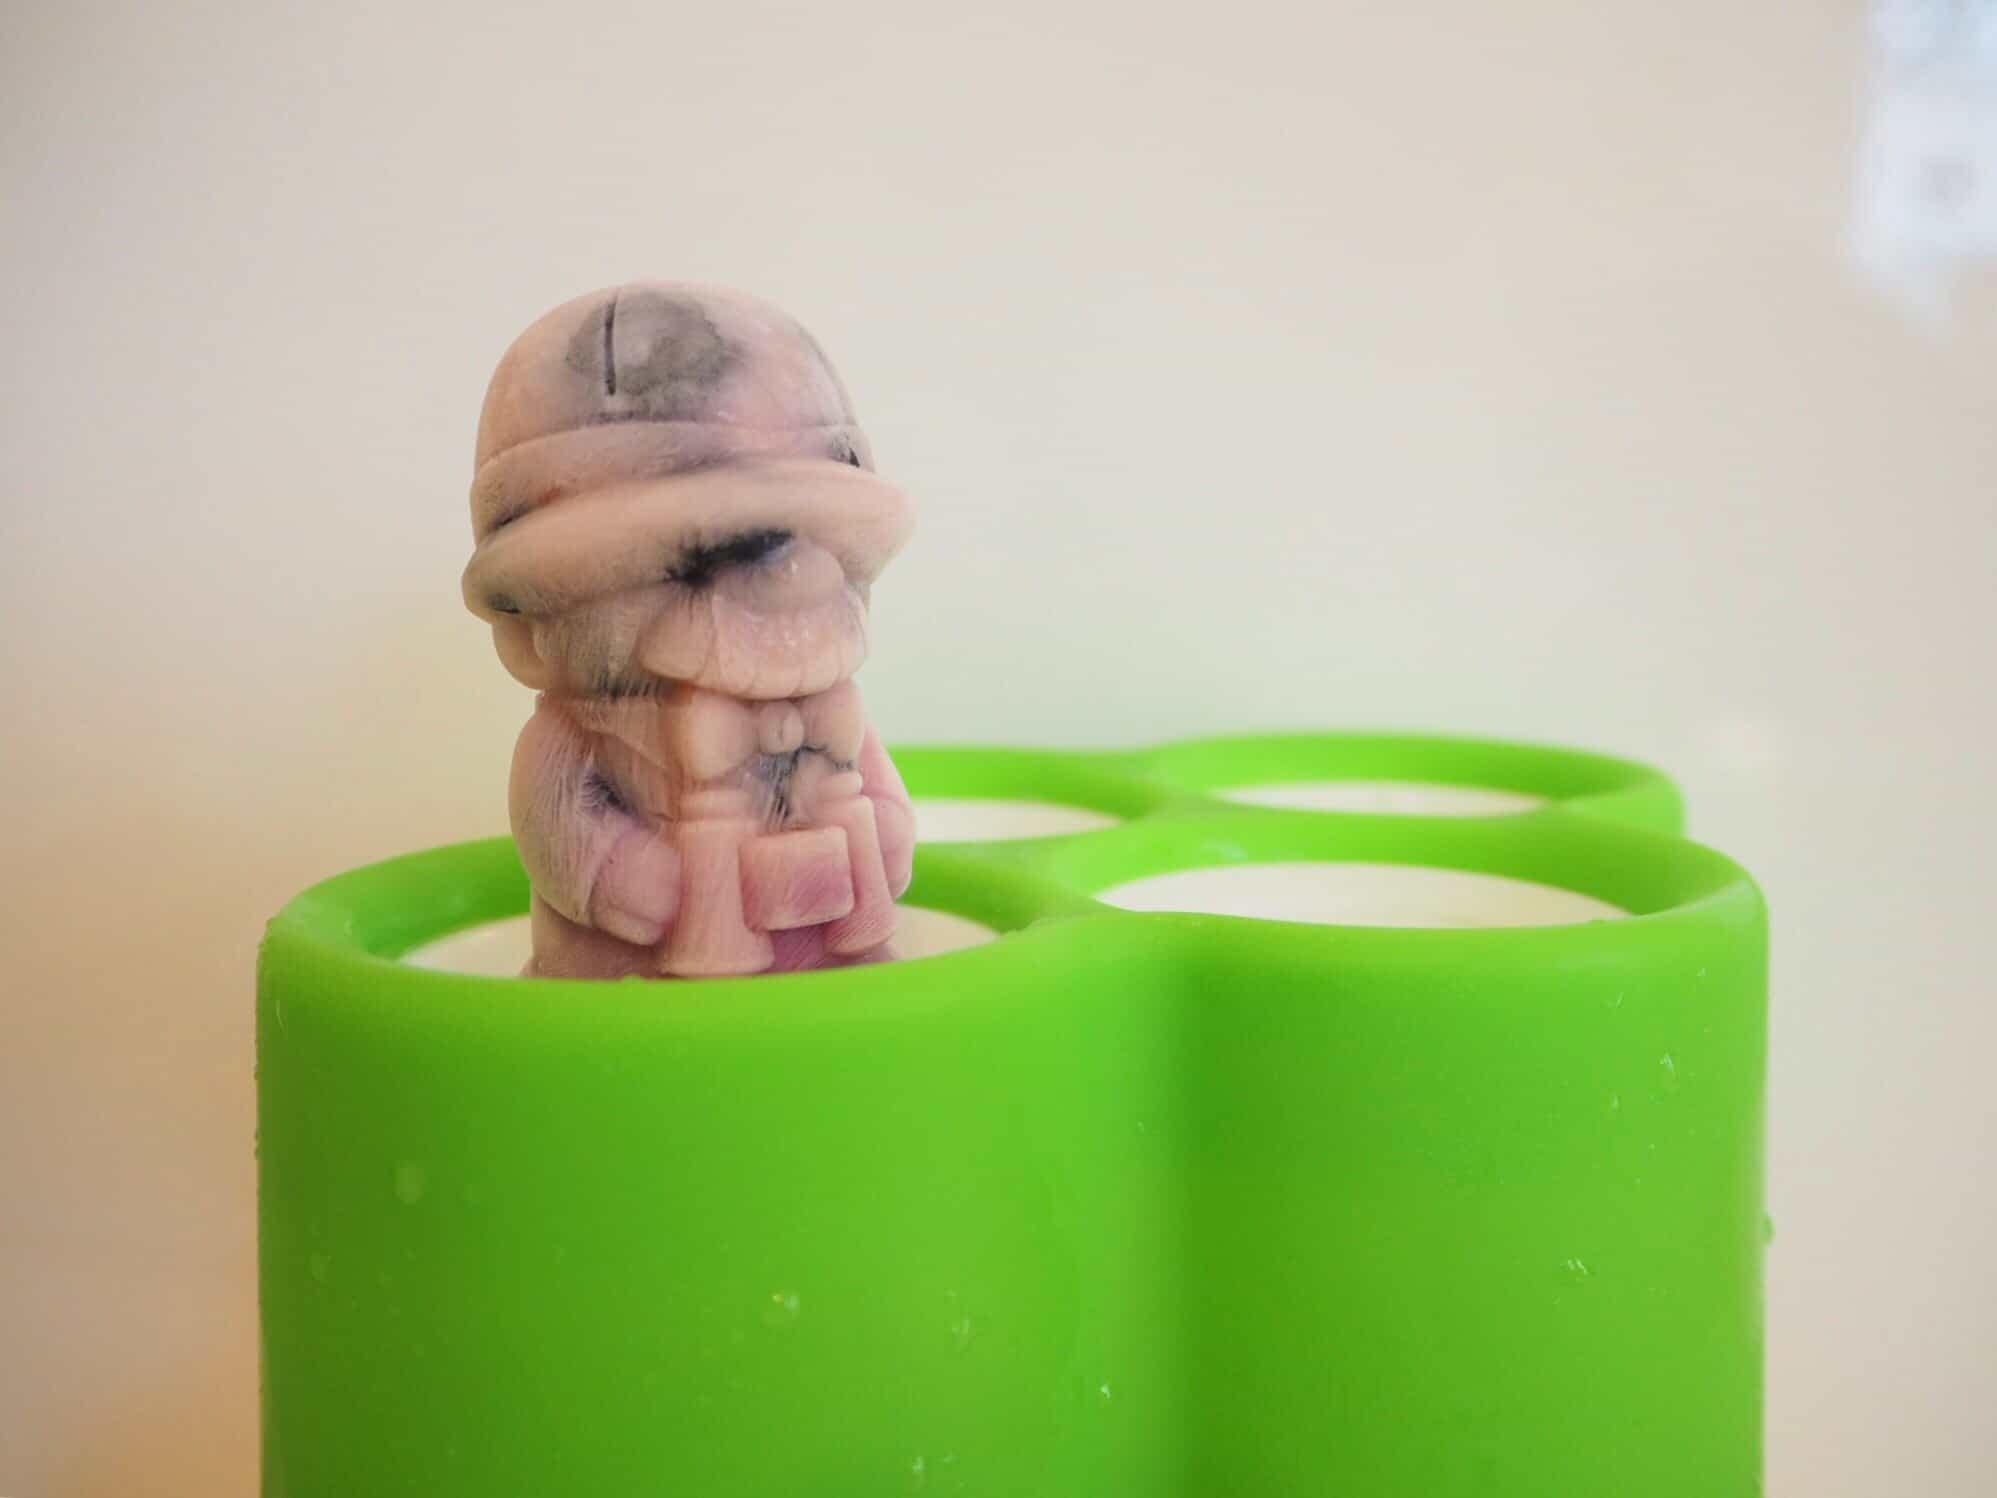 自製優格冰棒 -寶寶版 DIY Frozen Yogurt for Toddler